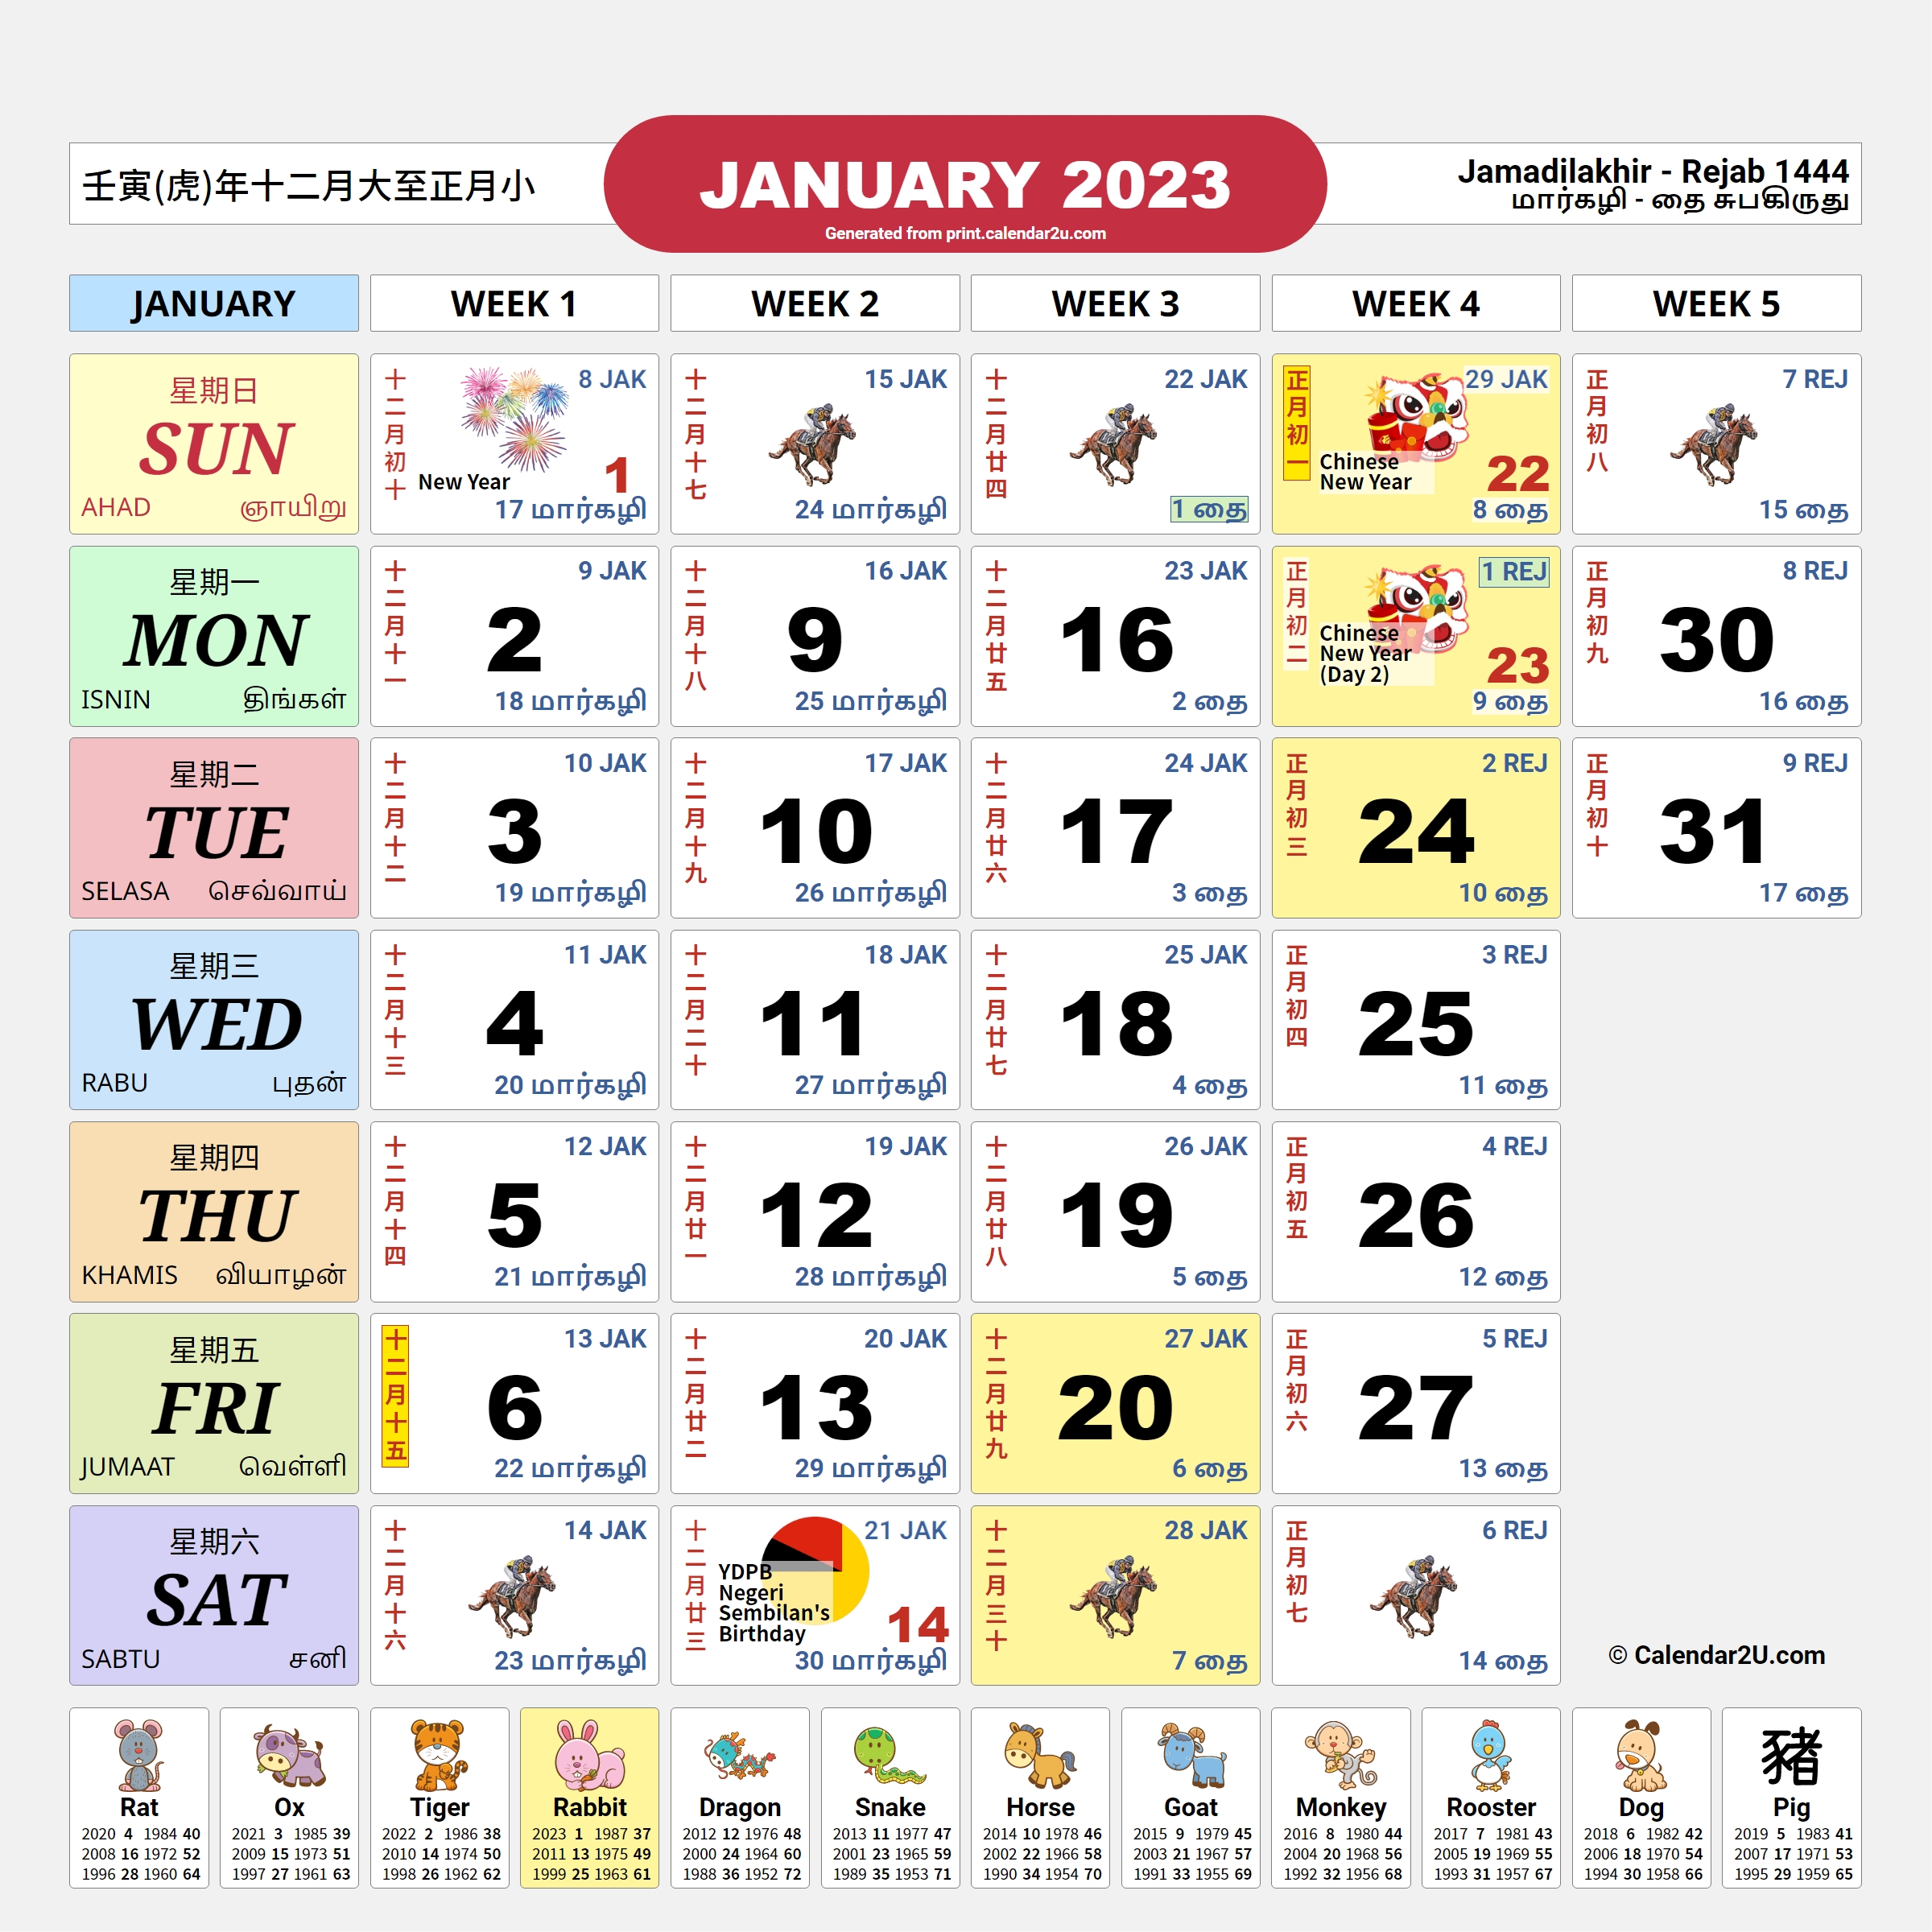 kalendar-malaysia-2023-kalendar-kuda-tradisional-kalendar-malaysia